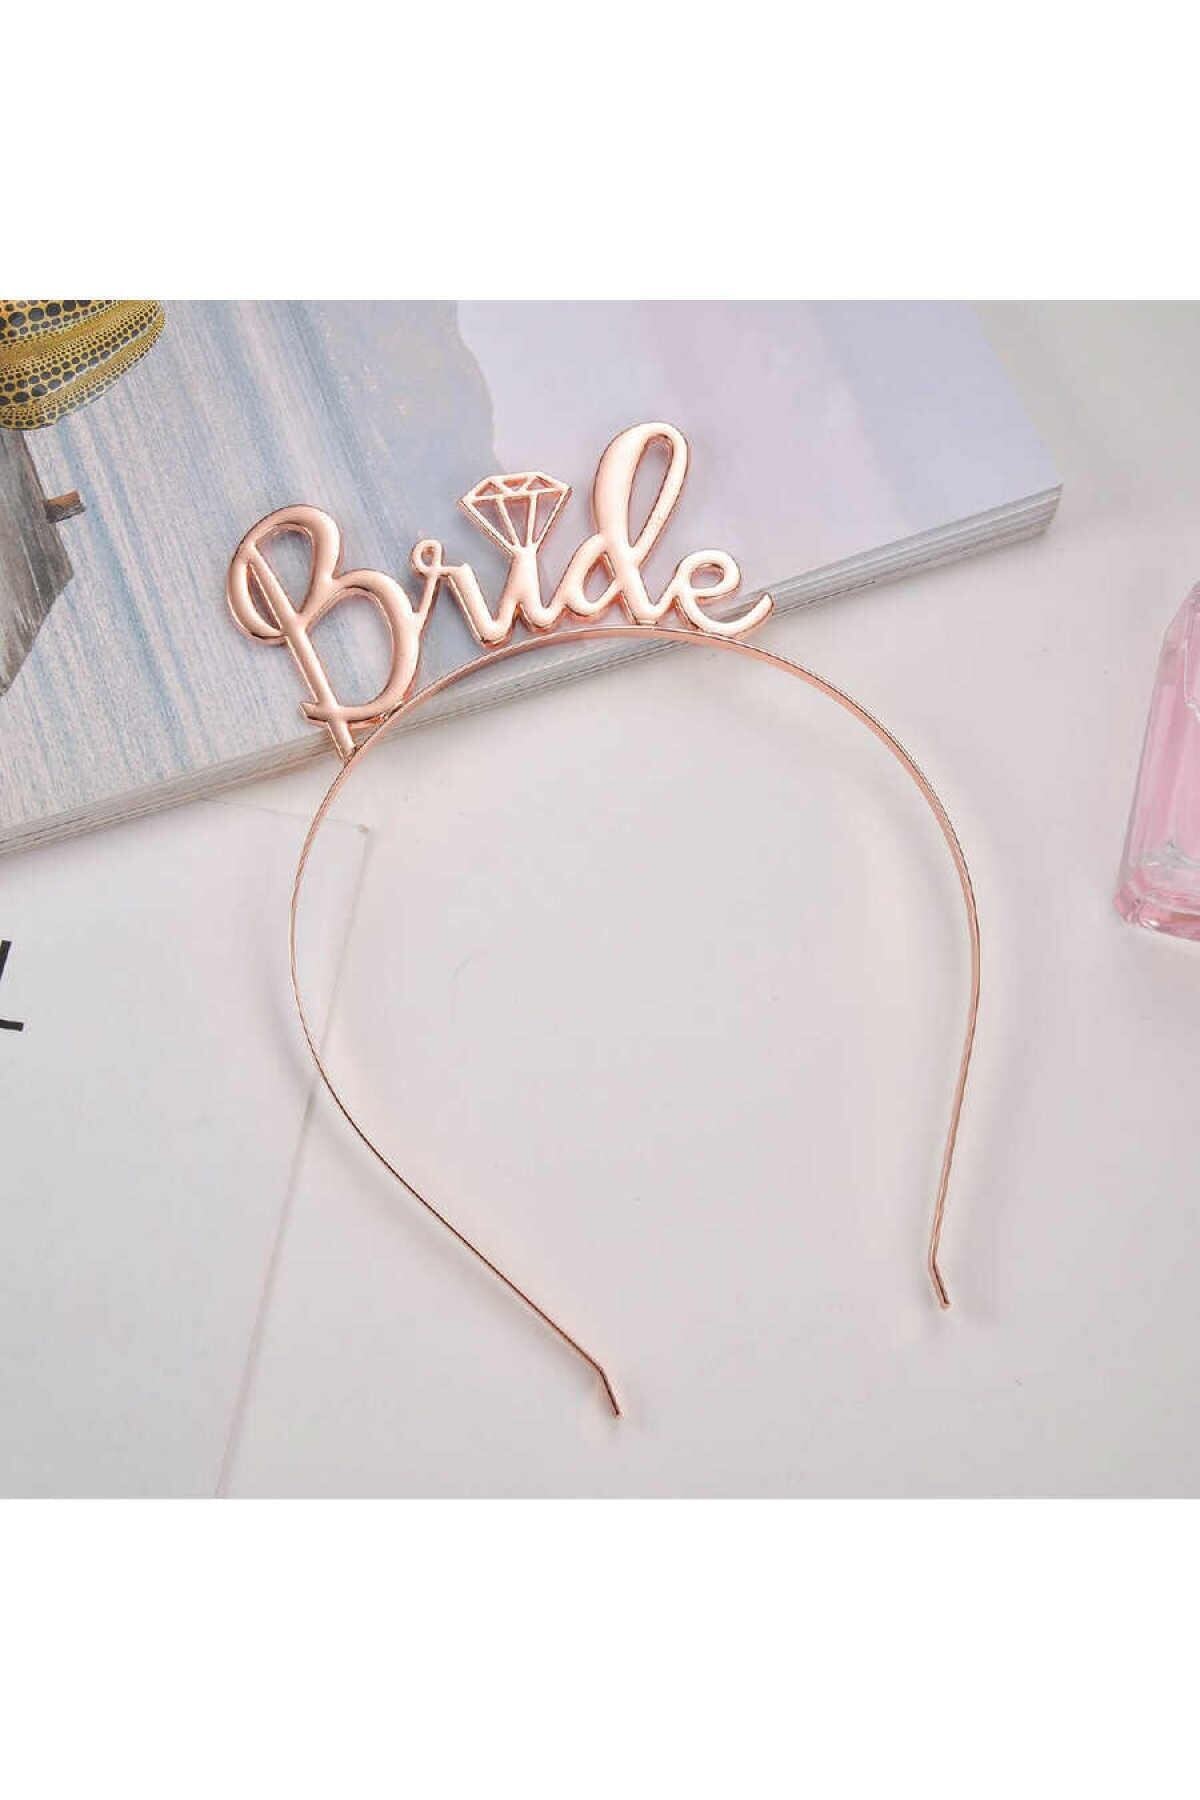 Bride Yazılı Metal Taç Rose Gold Renkli Bakır Renginde Bekarlığa Veda Partisi Konsepti Kaliteli Taç